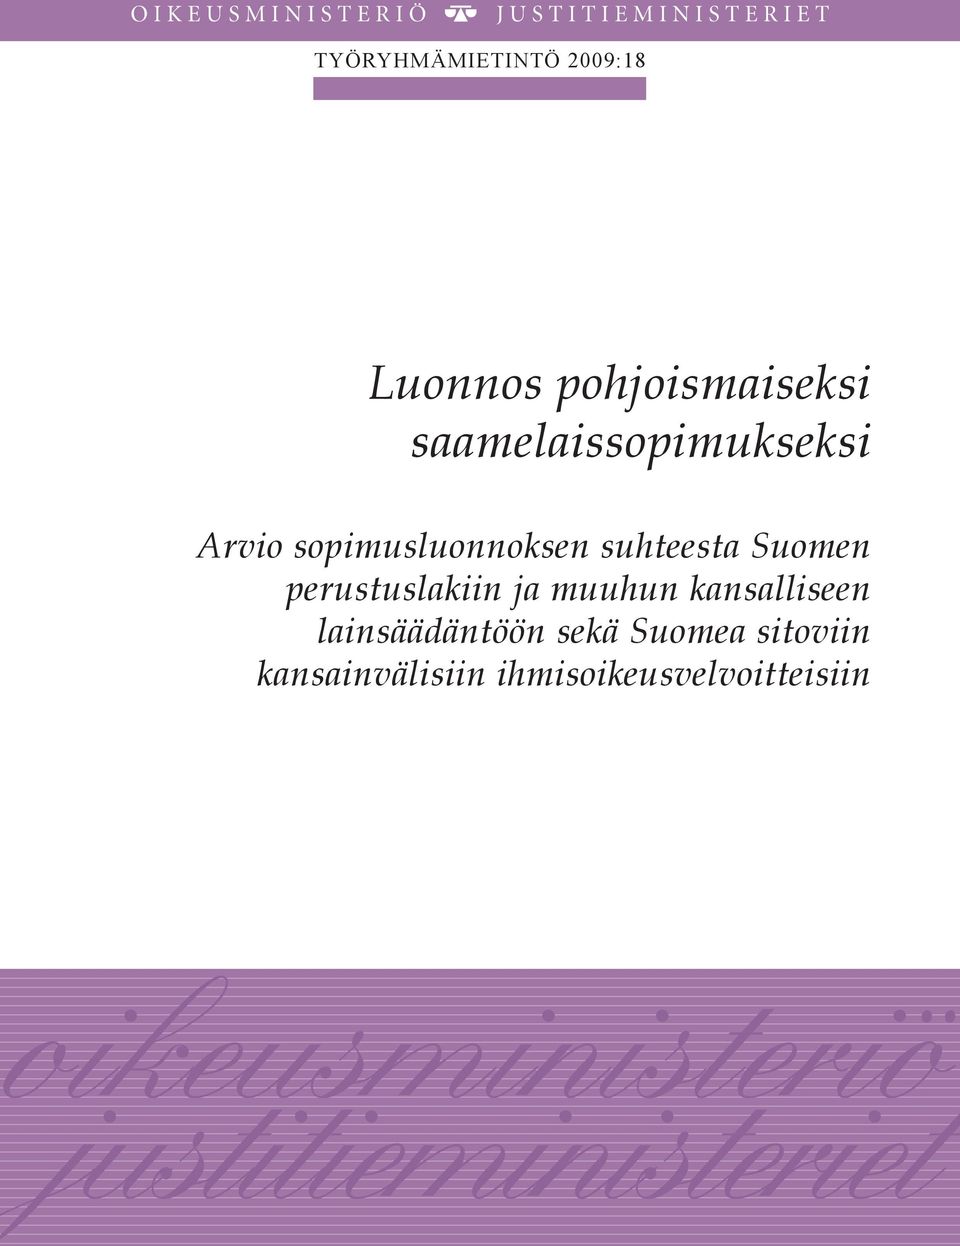 Suomen perustuslakiin ja muuhun kansalliseen